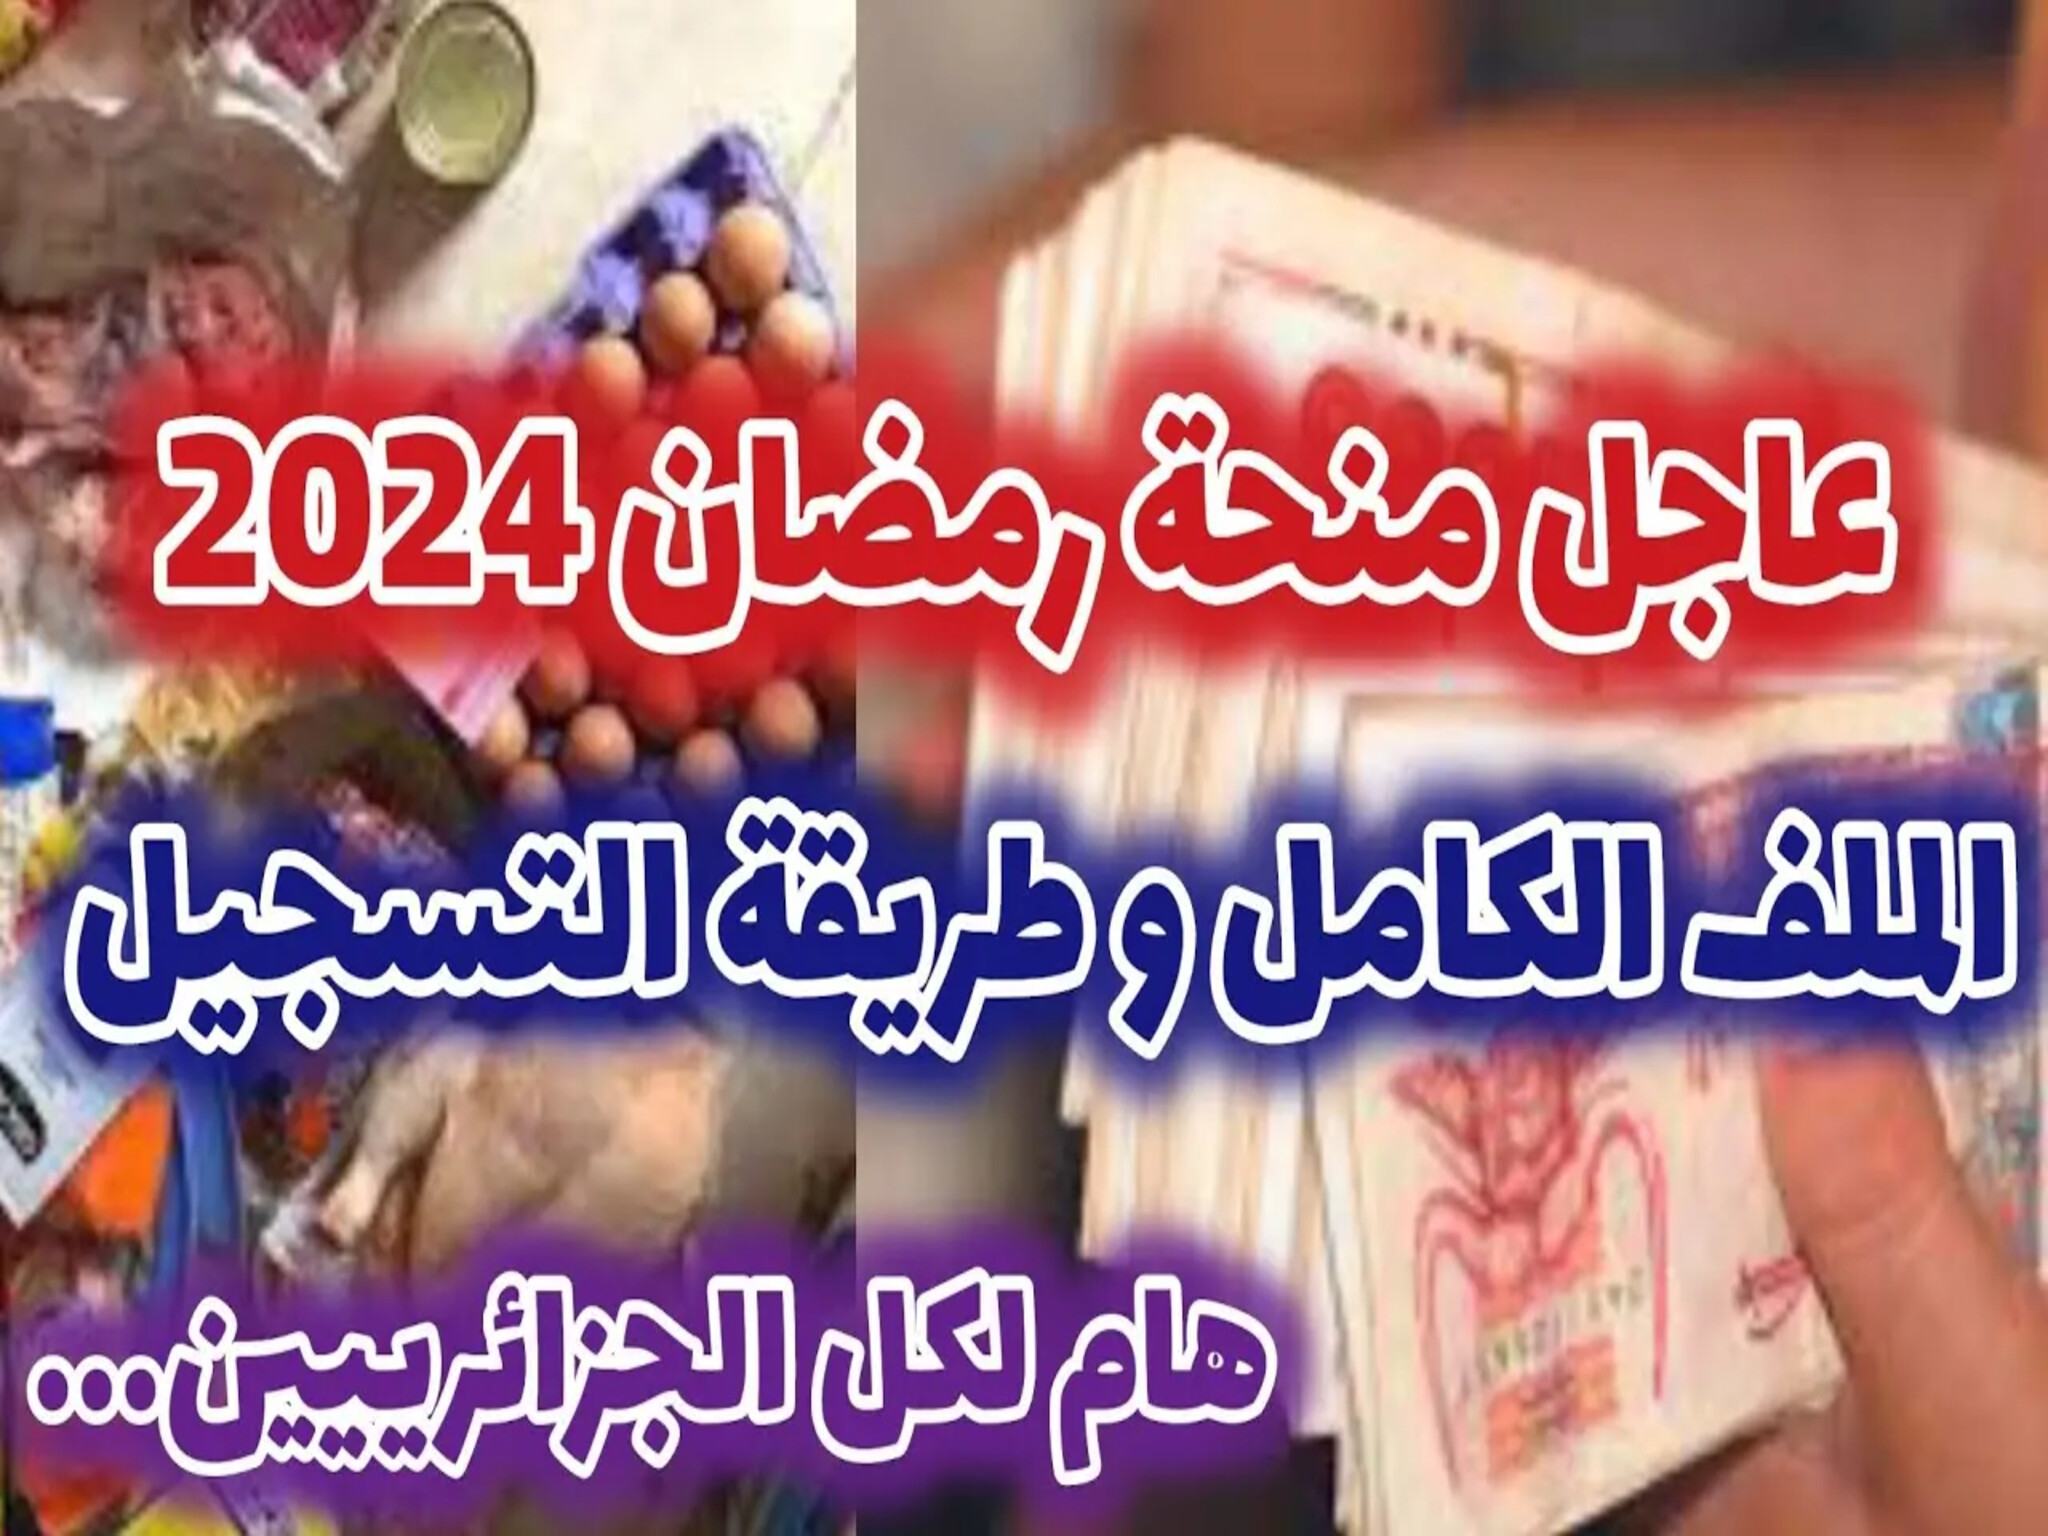 شروط التسجيل للإستفادة من منحة رمضان لسنة 2024 بالجزائر